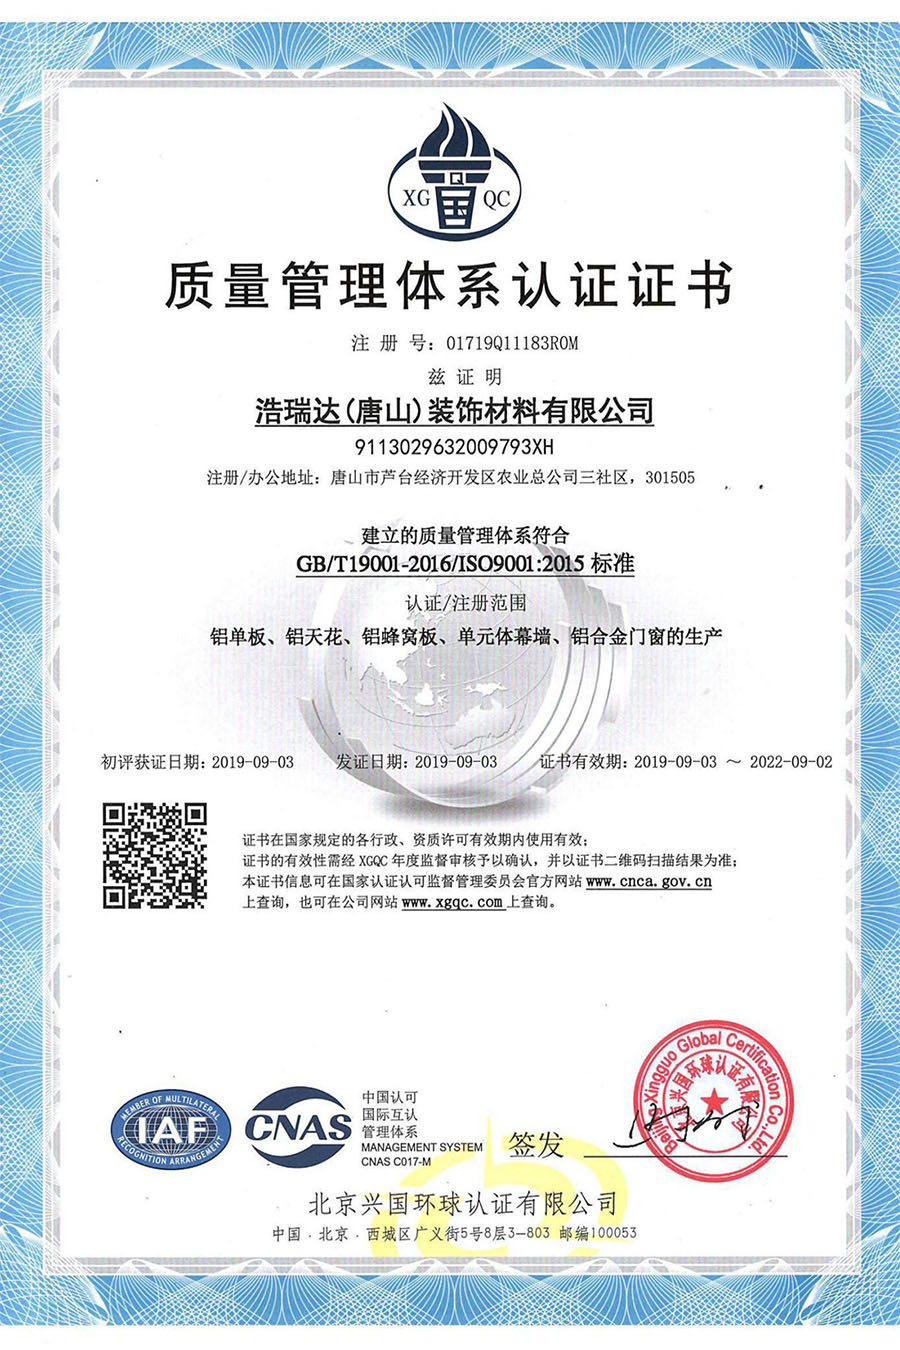 Сертификация системы менеджмента качества (китайский)